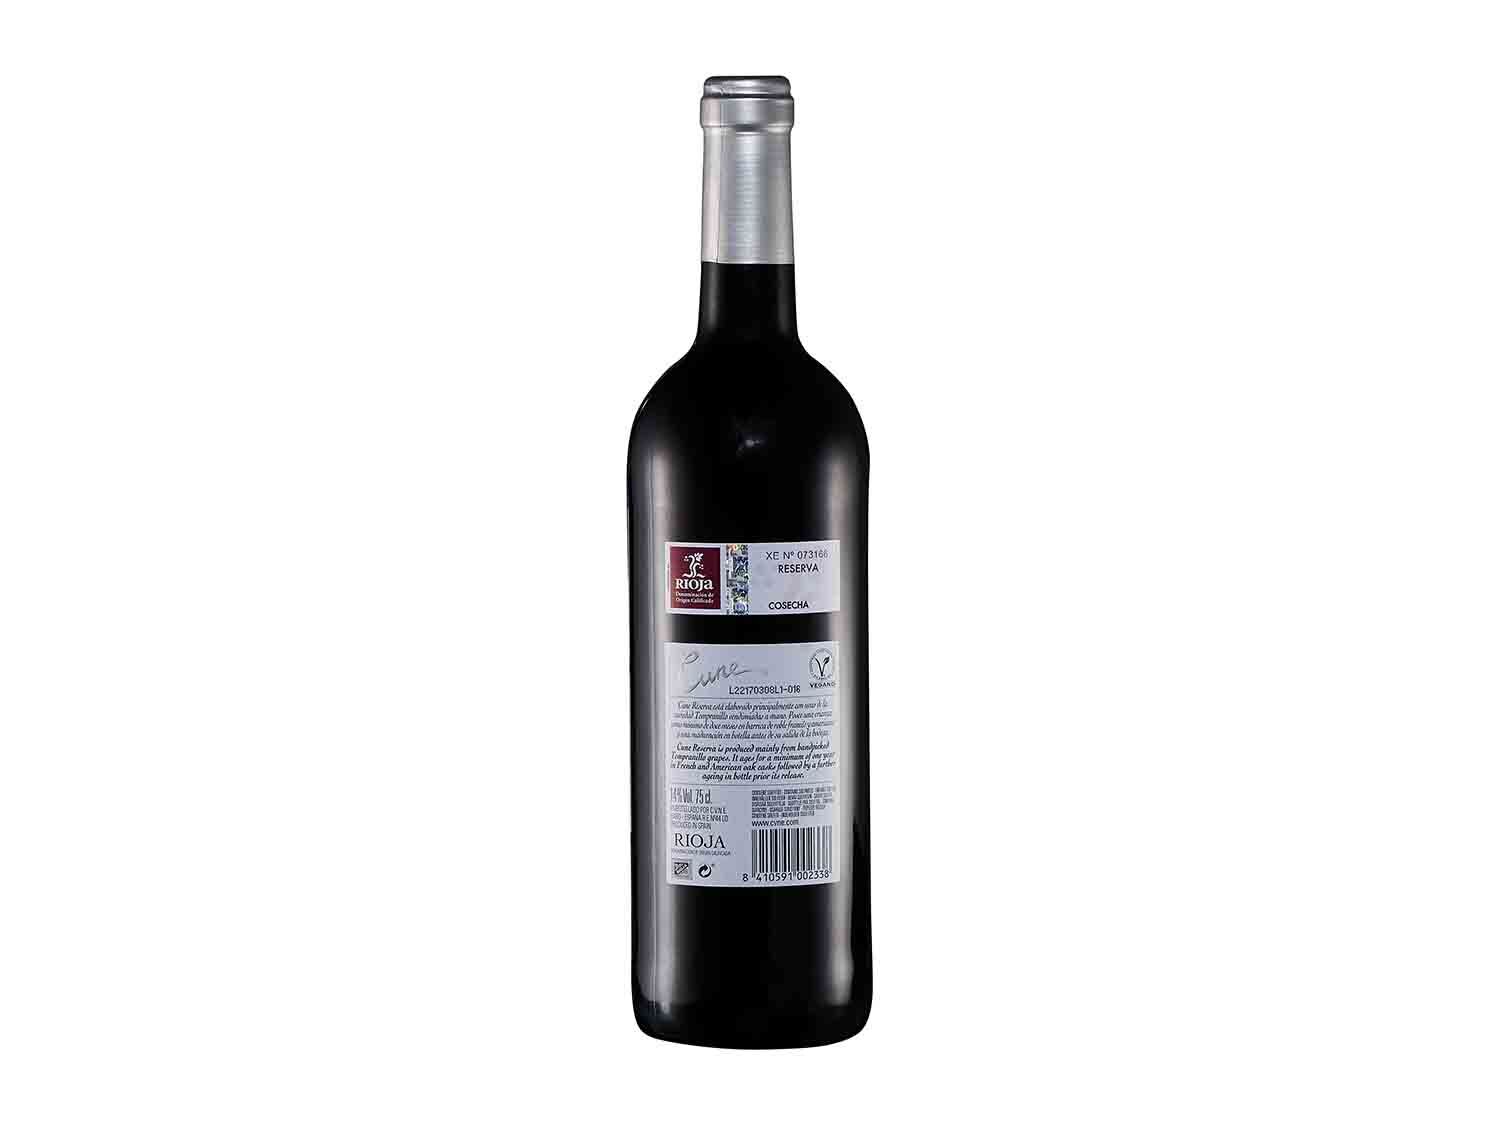 Pack 2 Cuné D.O. Rioja Reserva y Crianza vino Tinto